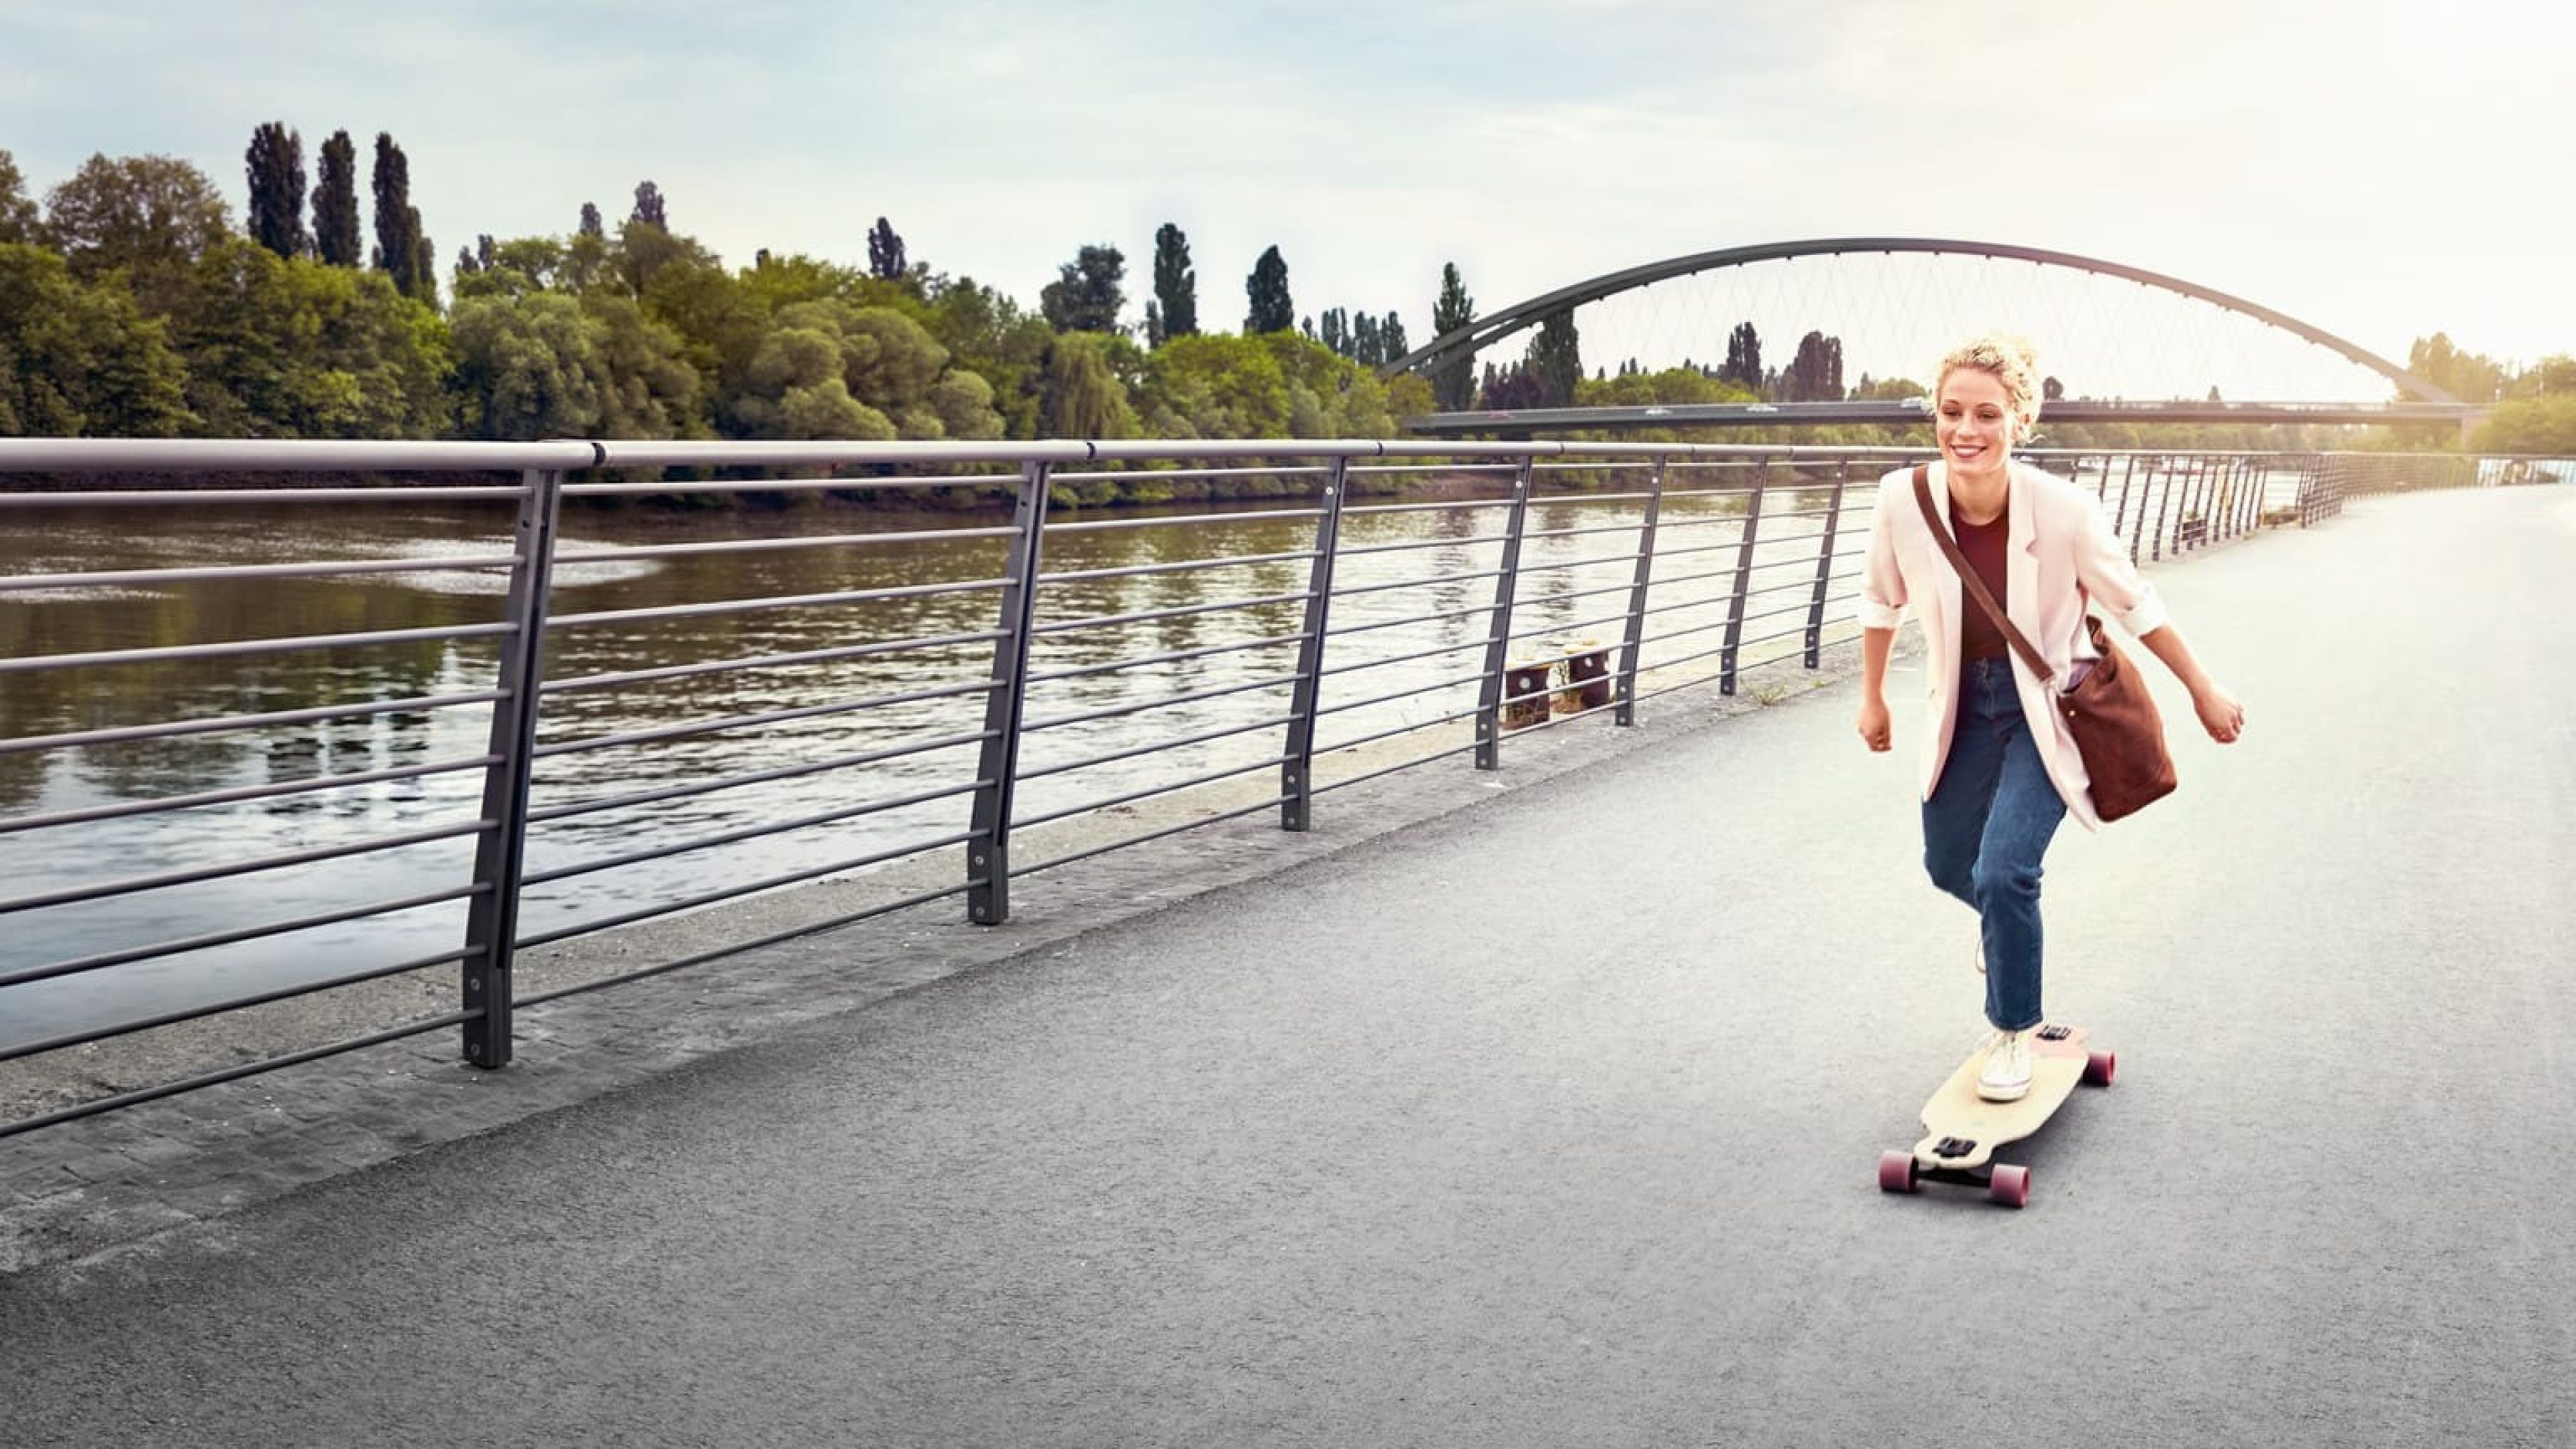 Frau auf Skateboard am Fluss